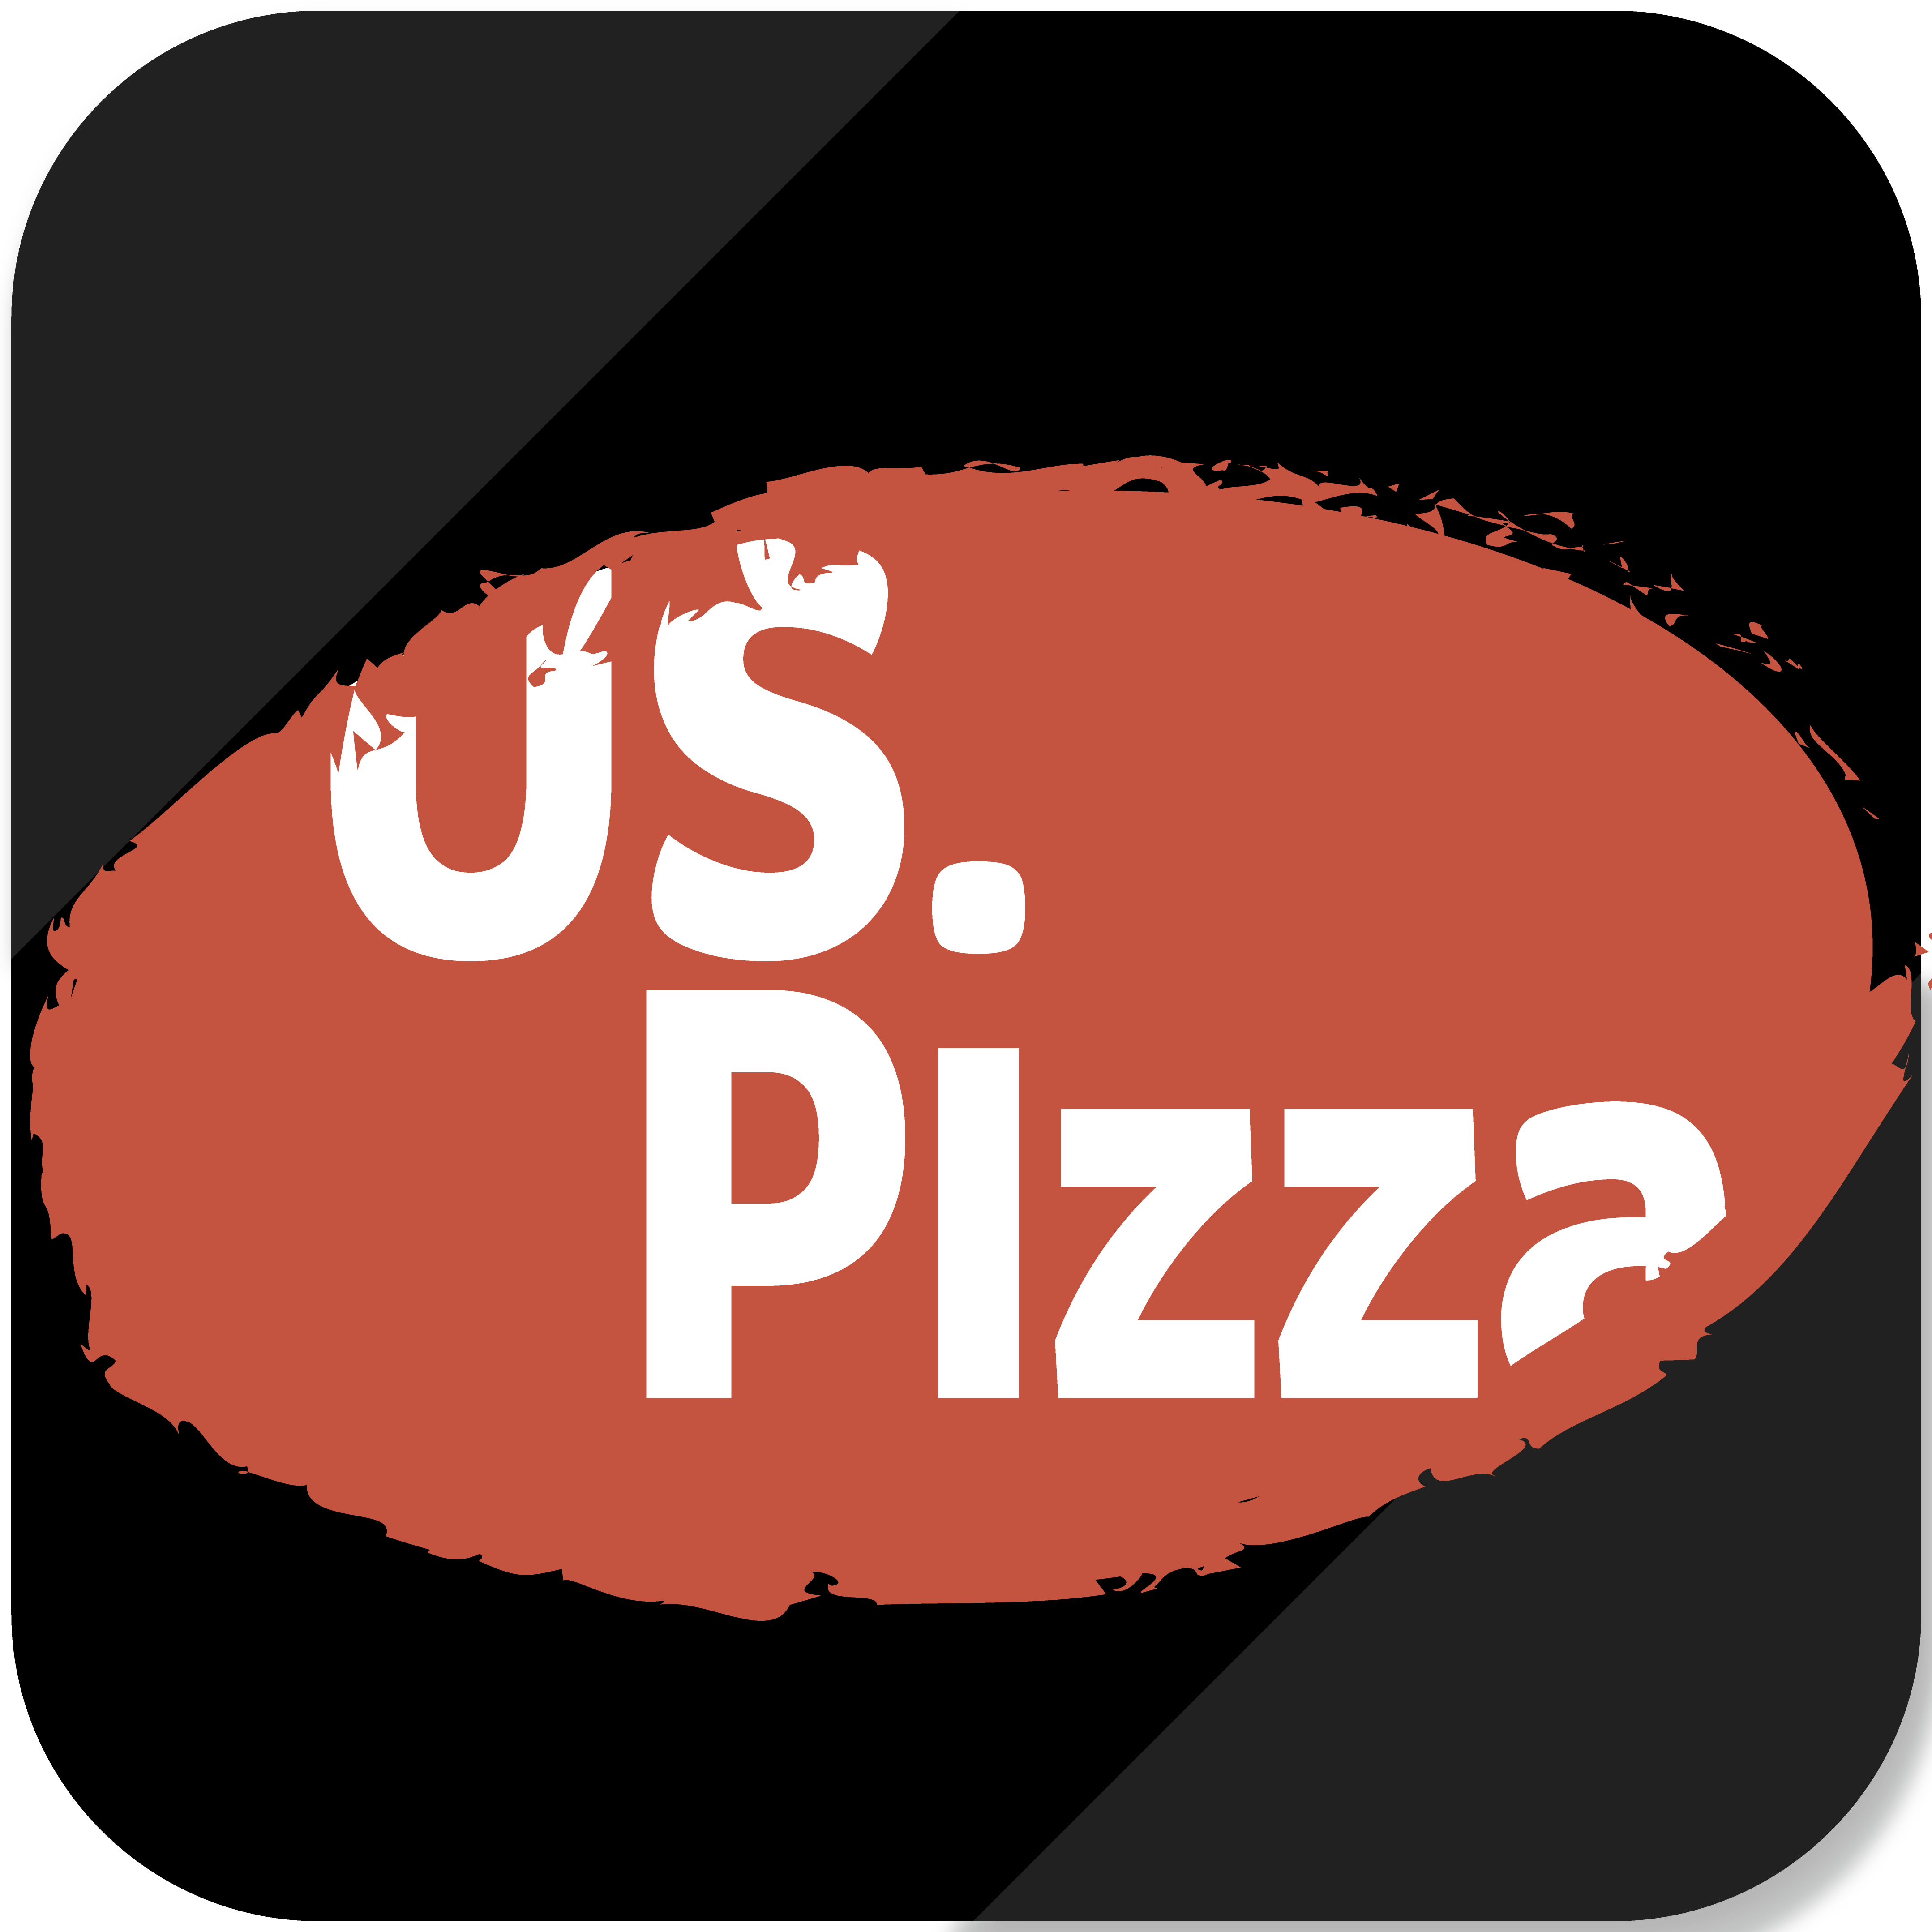 U.S.Pizza Express